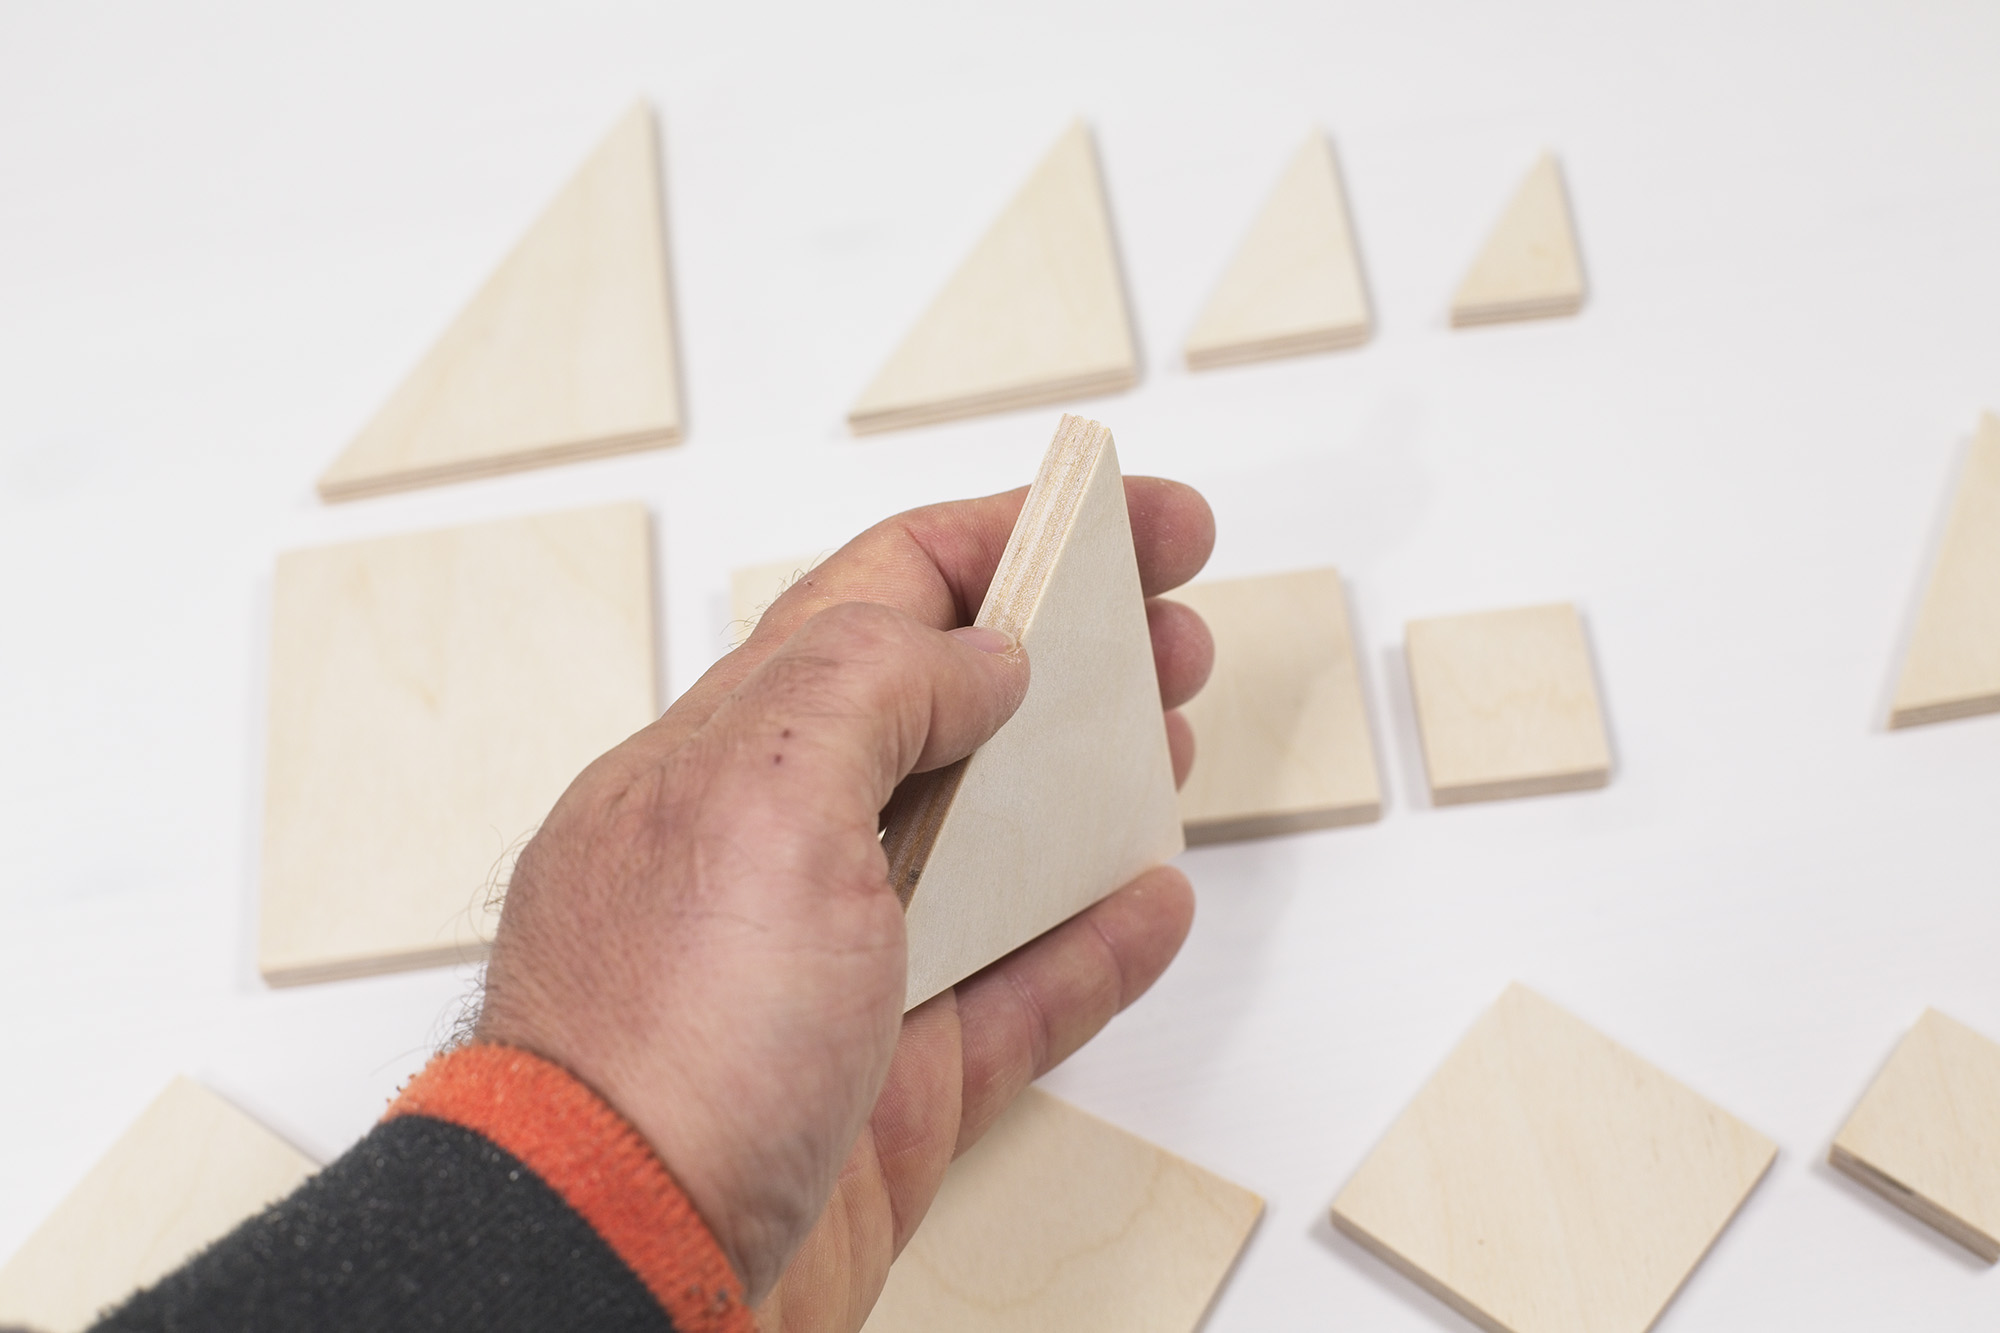 Forme geometriche di legno per disabili